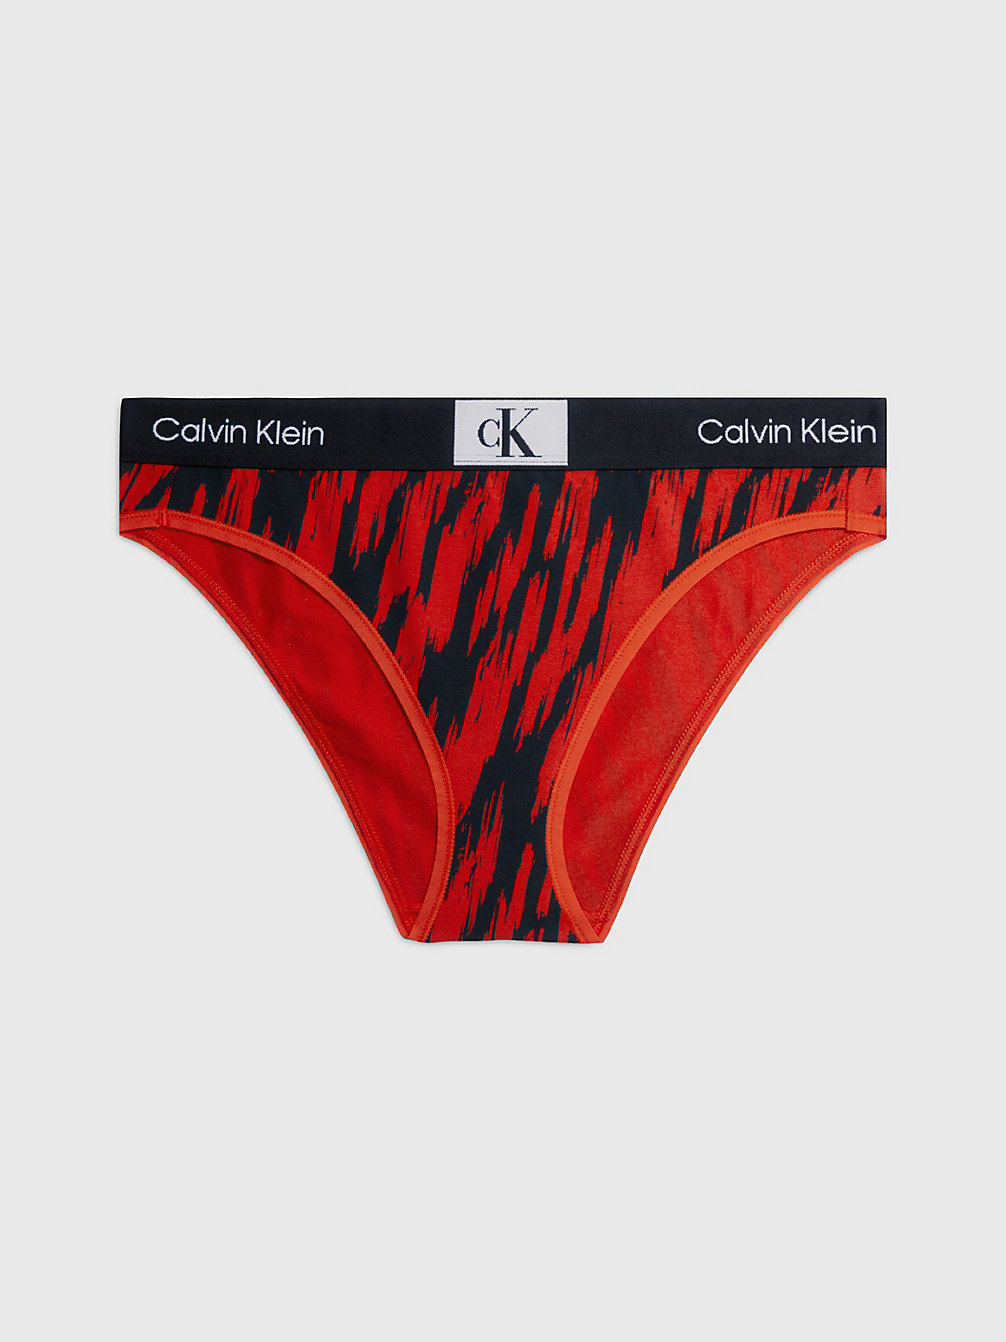 TIGER PRINT/HAZARD Slips - Ck96 undefined Damen Calvin Klein